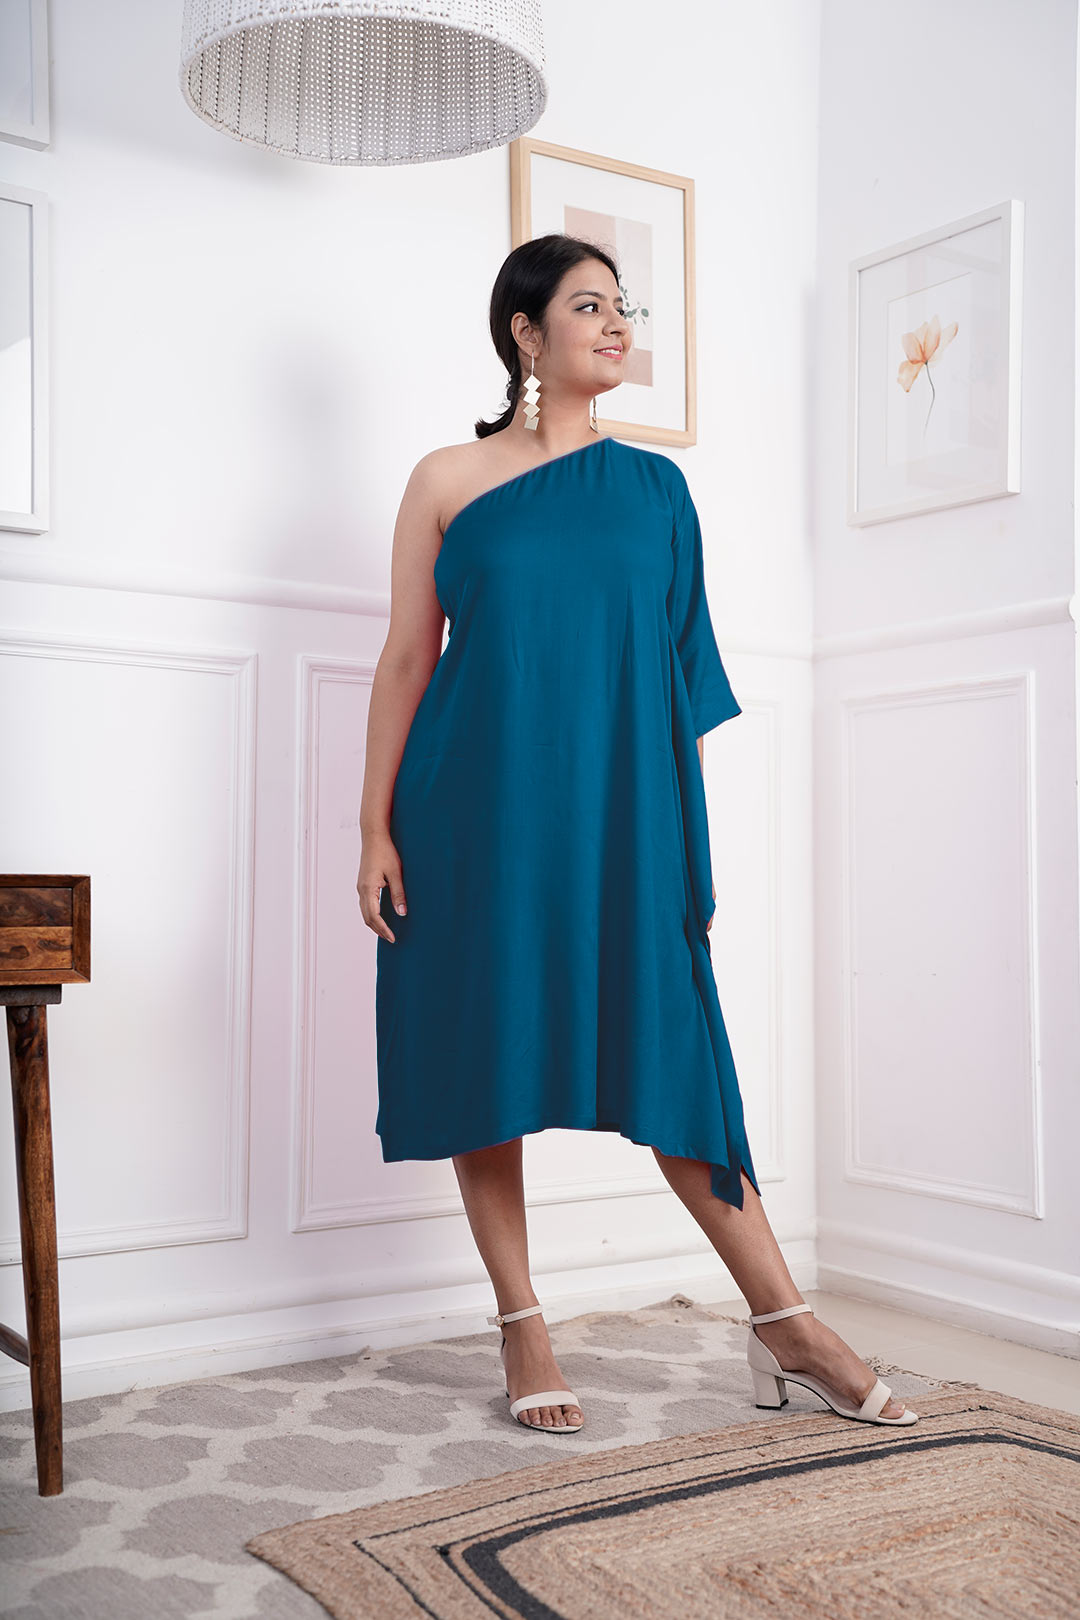 Teal Rayon OneShoulder Dress - Solid